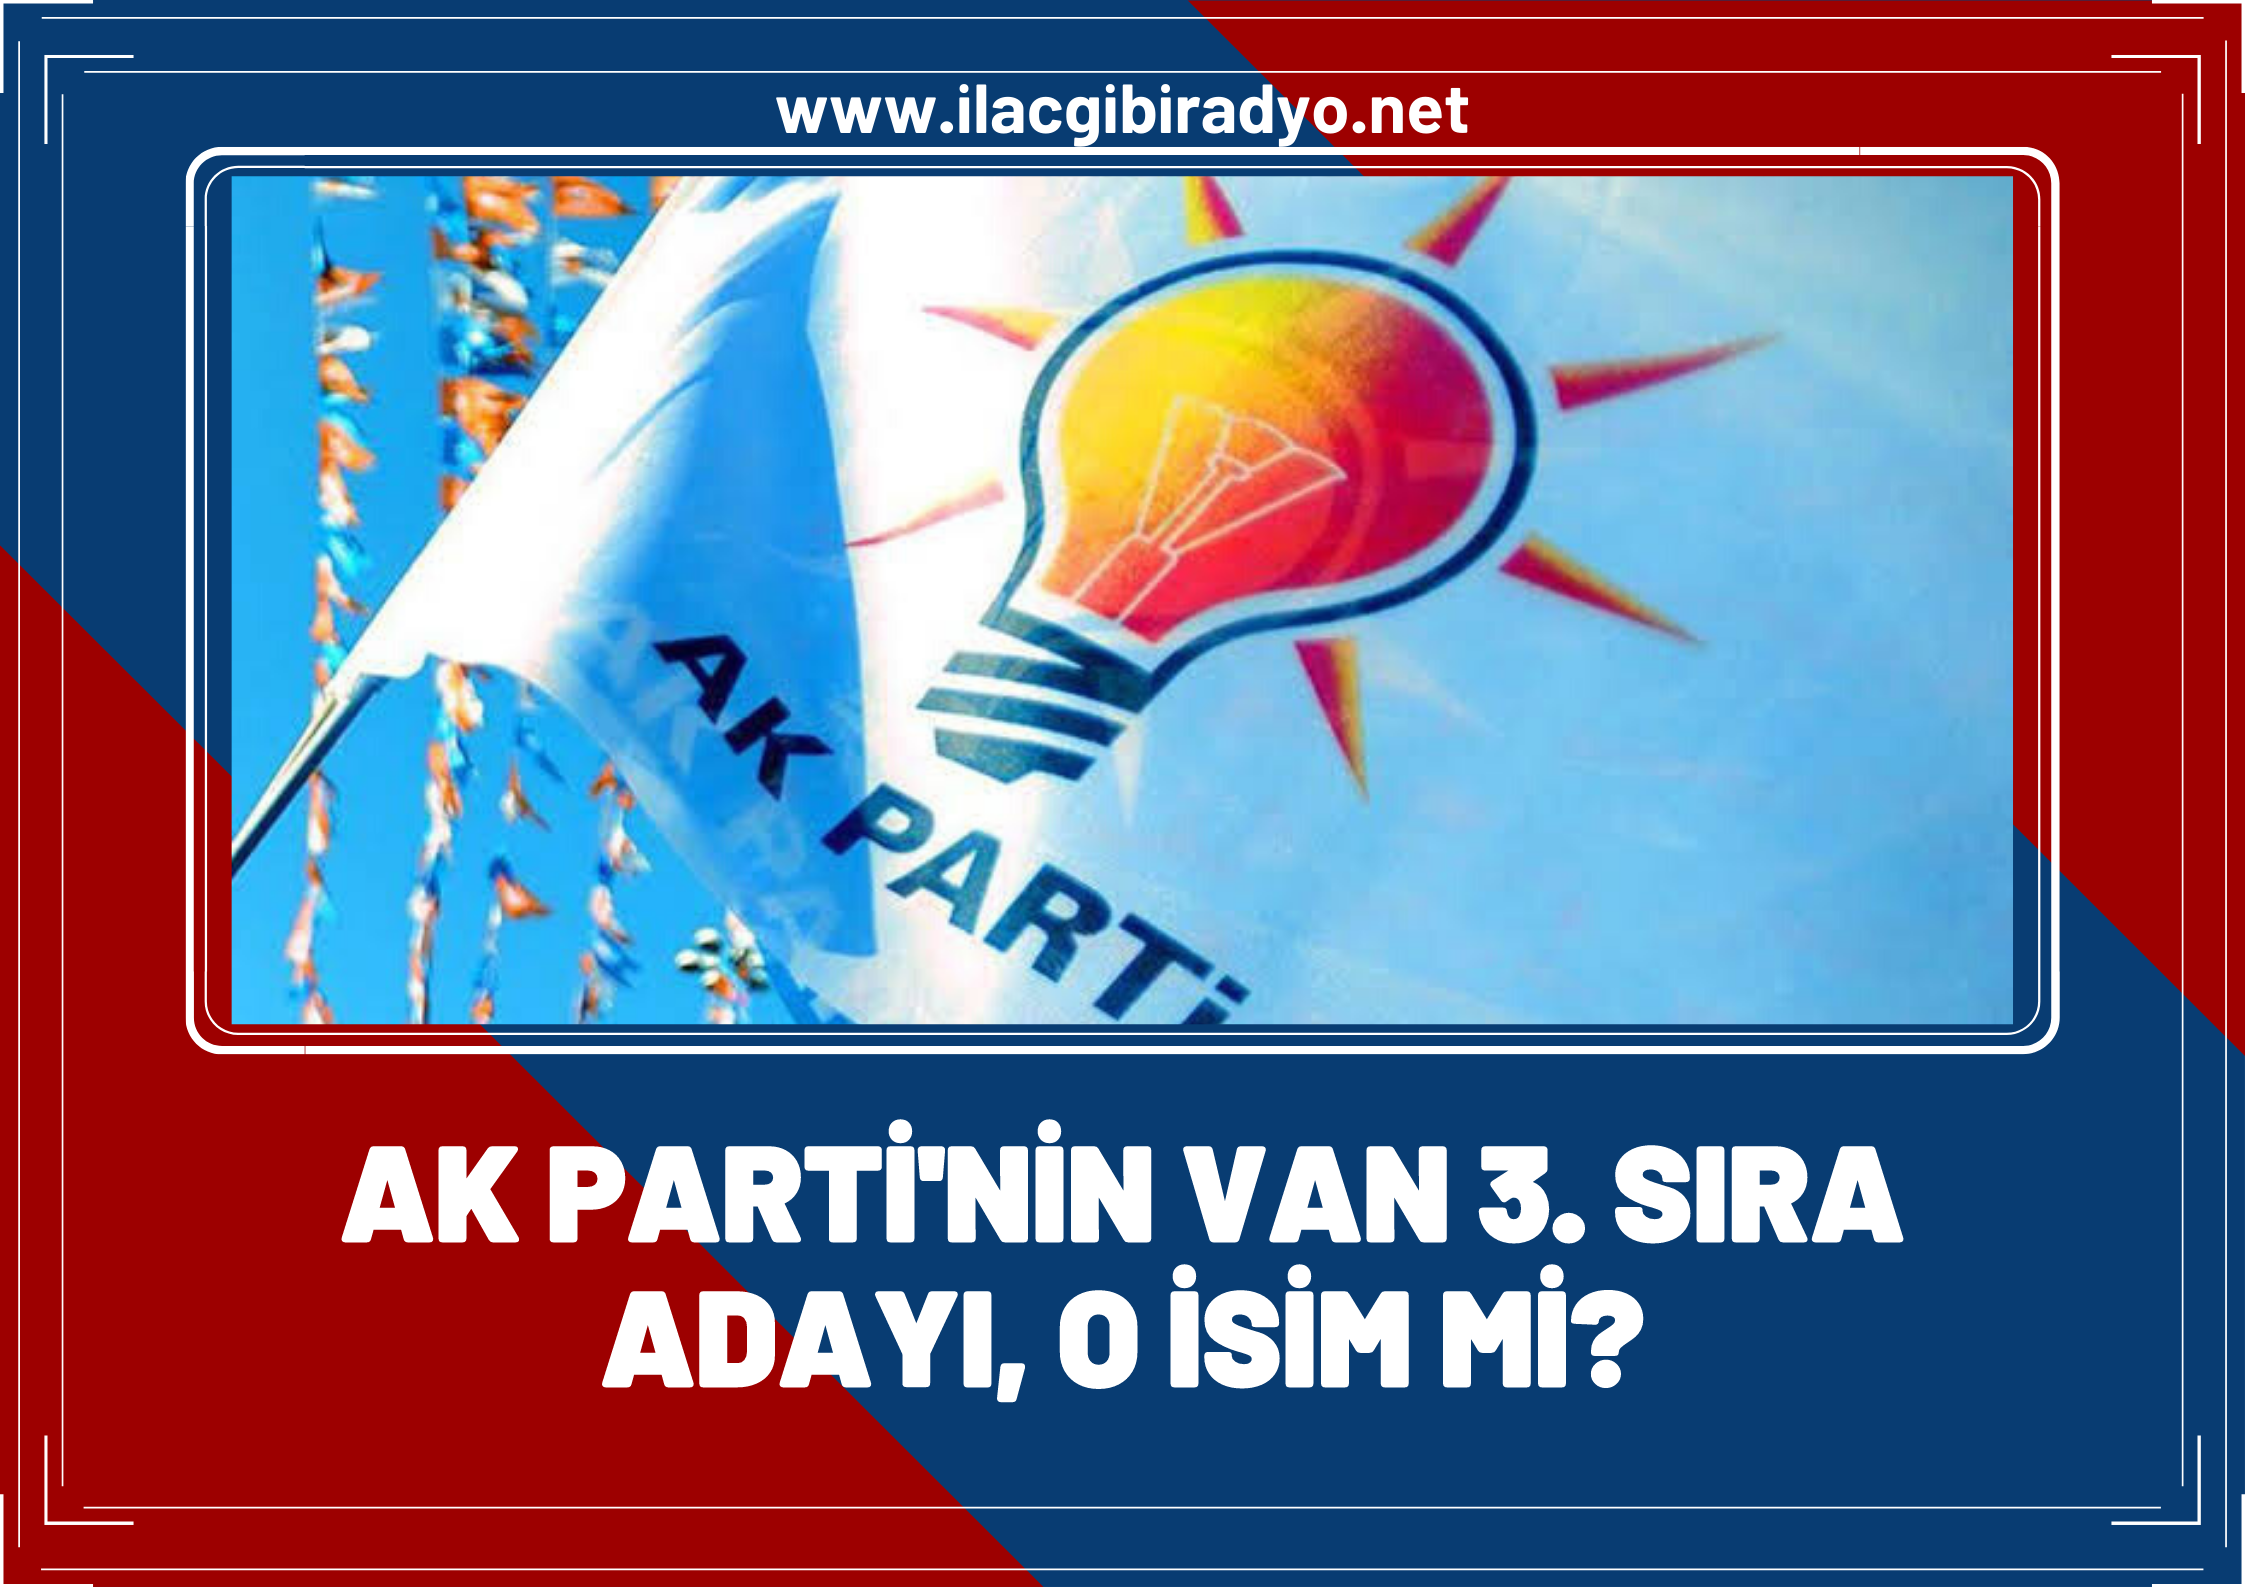 Oda TV'den flaş iddia! Van AK Parti'nin 3. sıra adayını duyurdular!